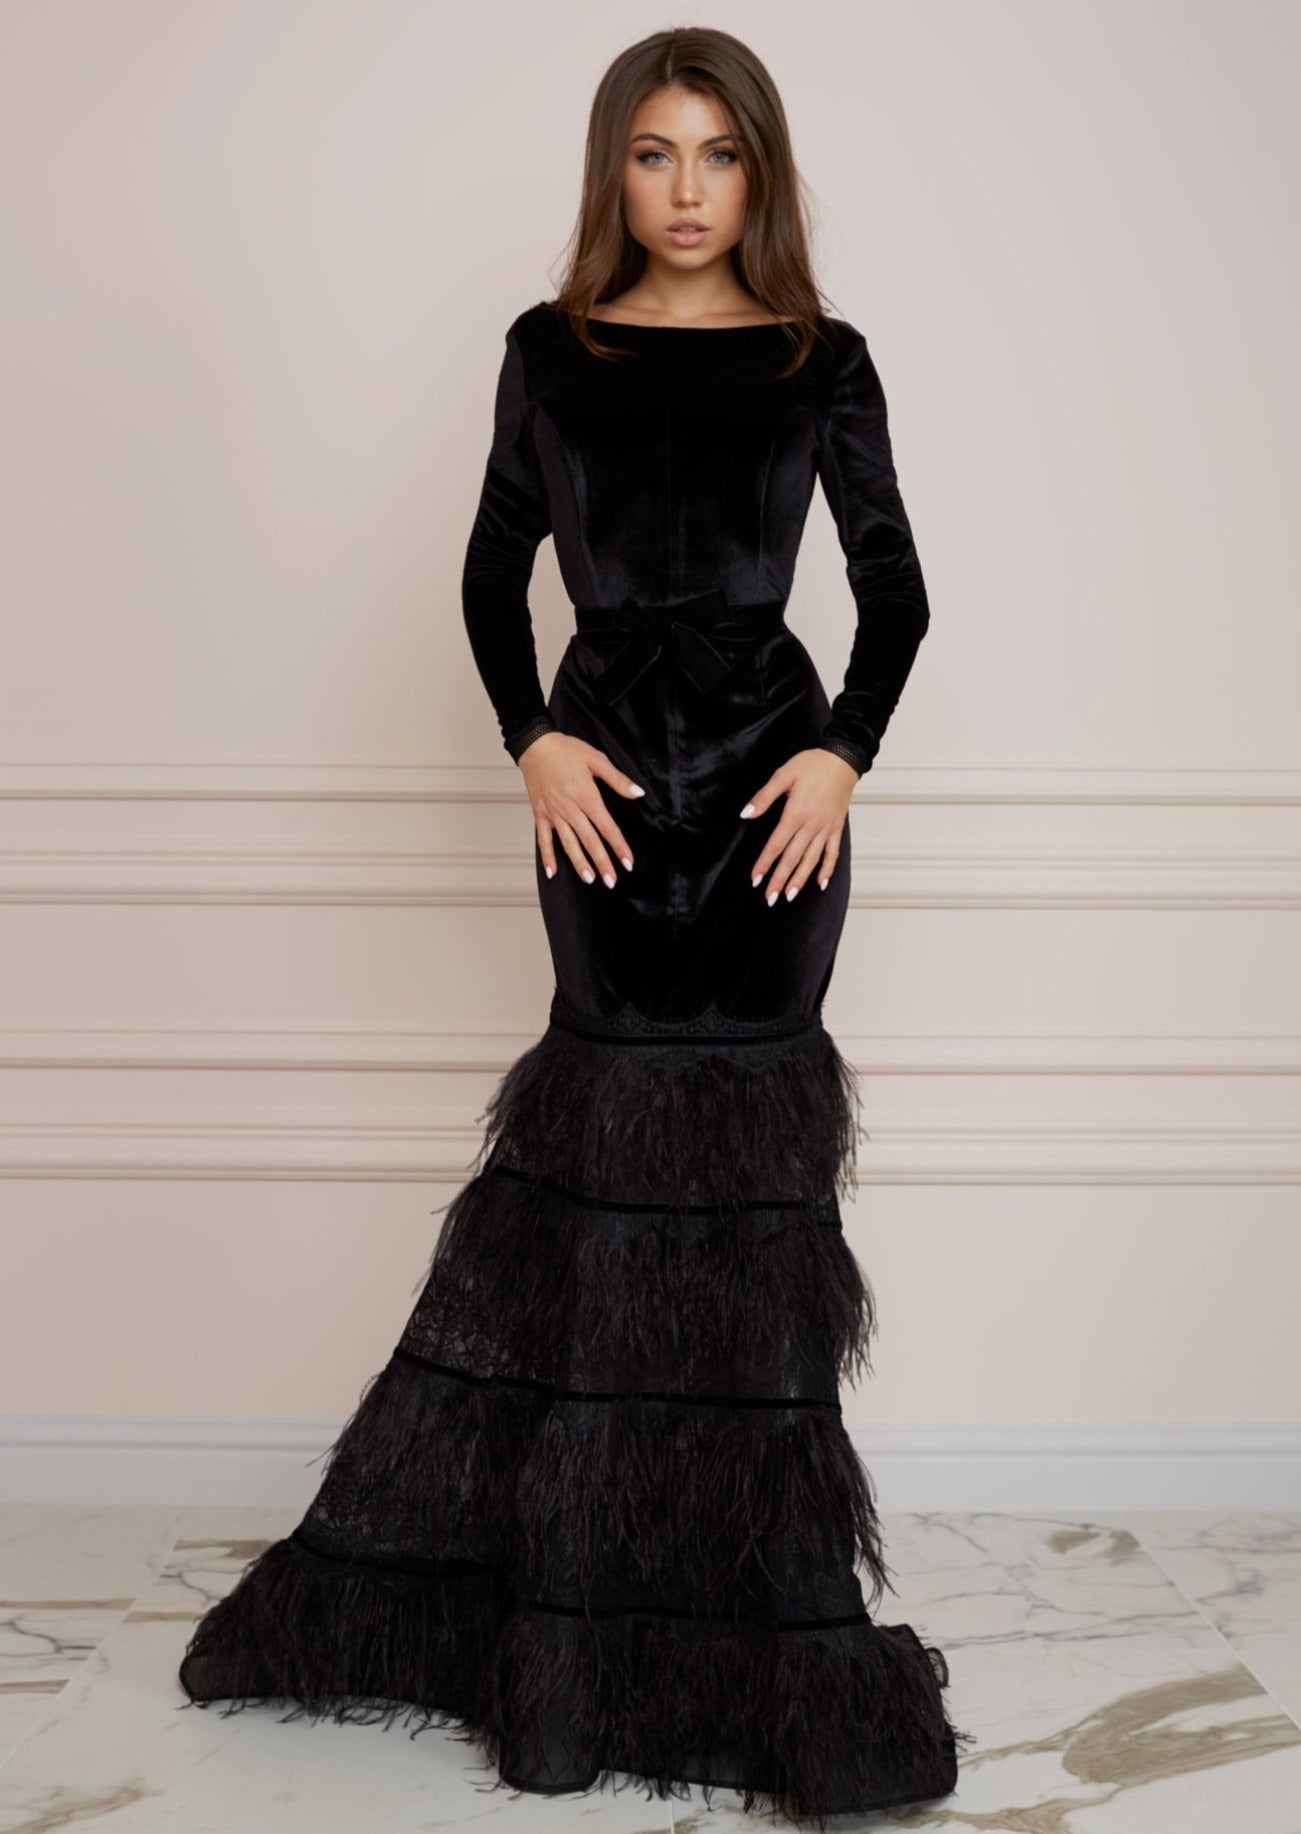 Formal Long Black Velvet Dress With Polka Dot Long Sleeves #J1559 -  GemGrace.com